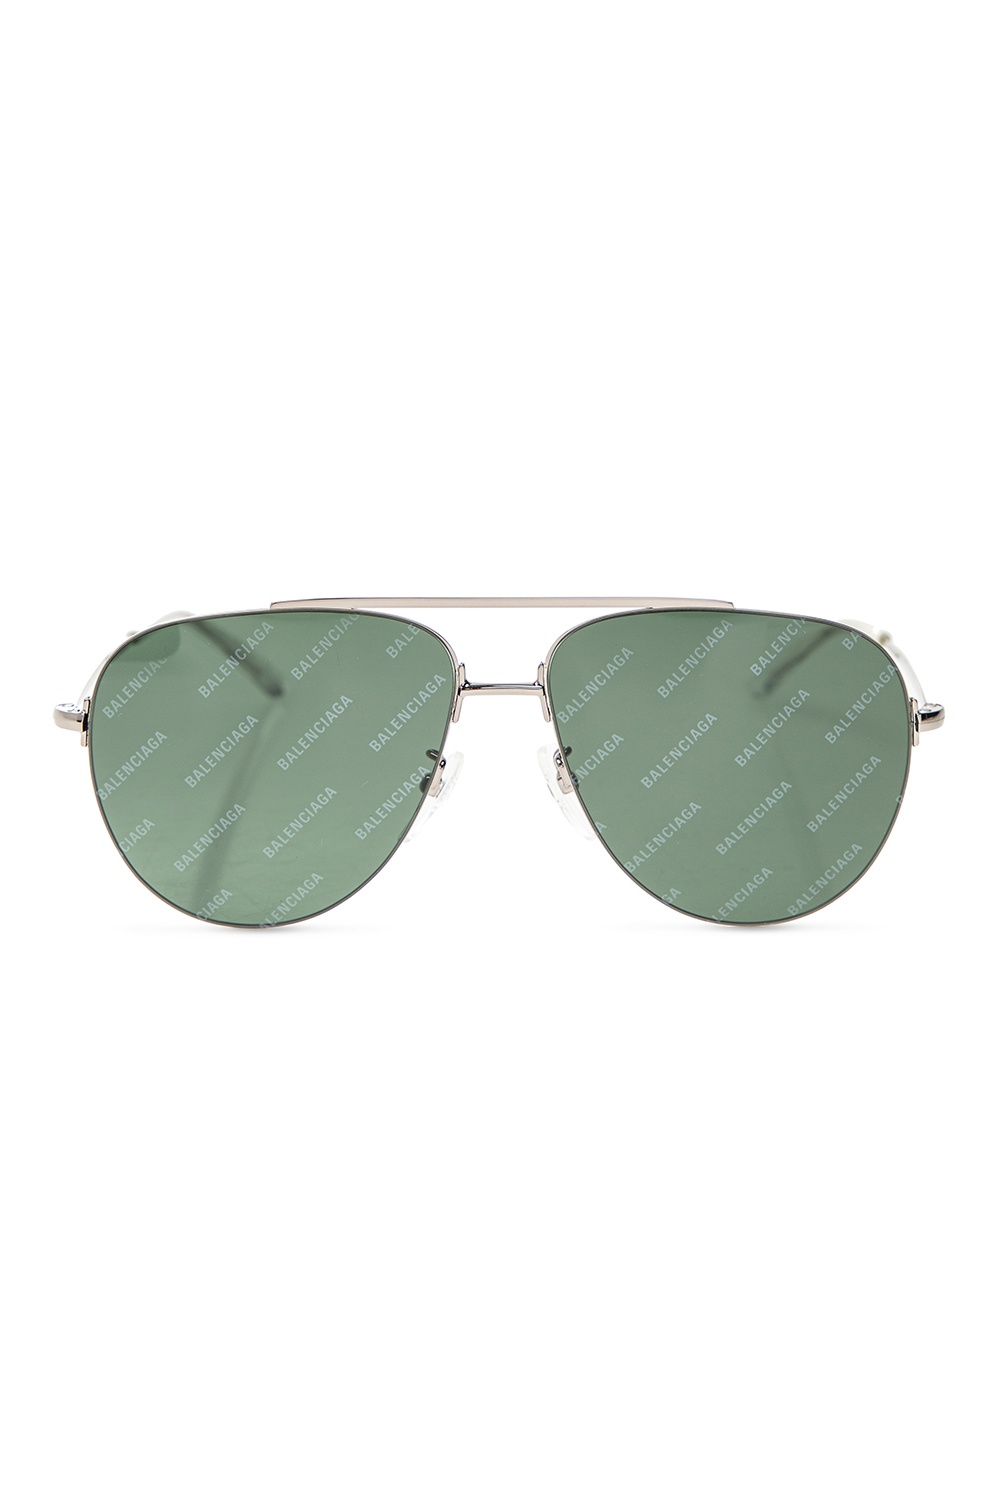 Louis Vuitton LV Waimea Sunglasses - Vitkac shop online